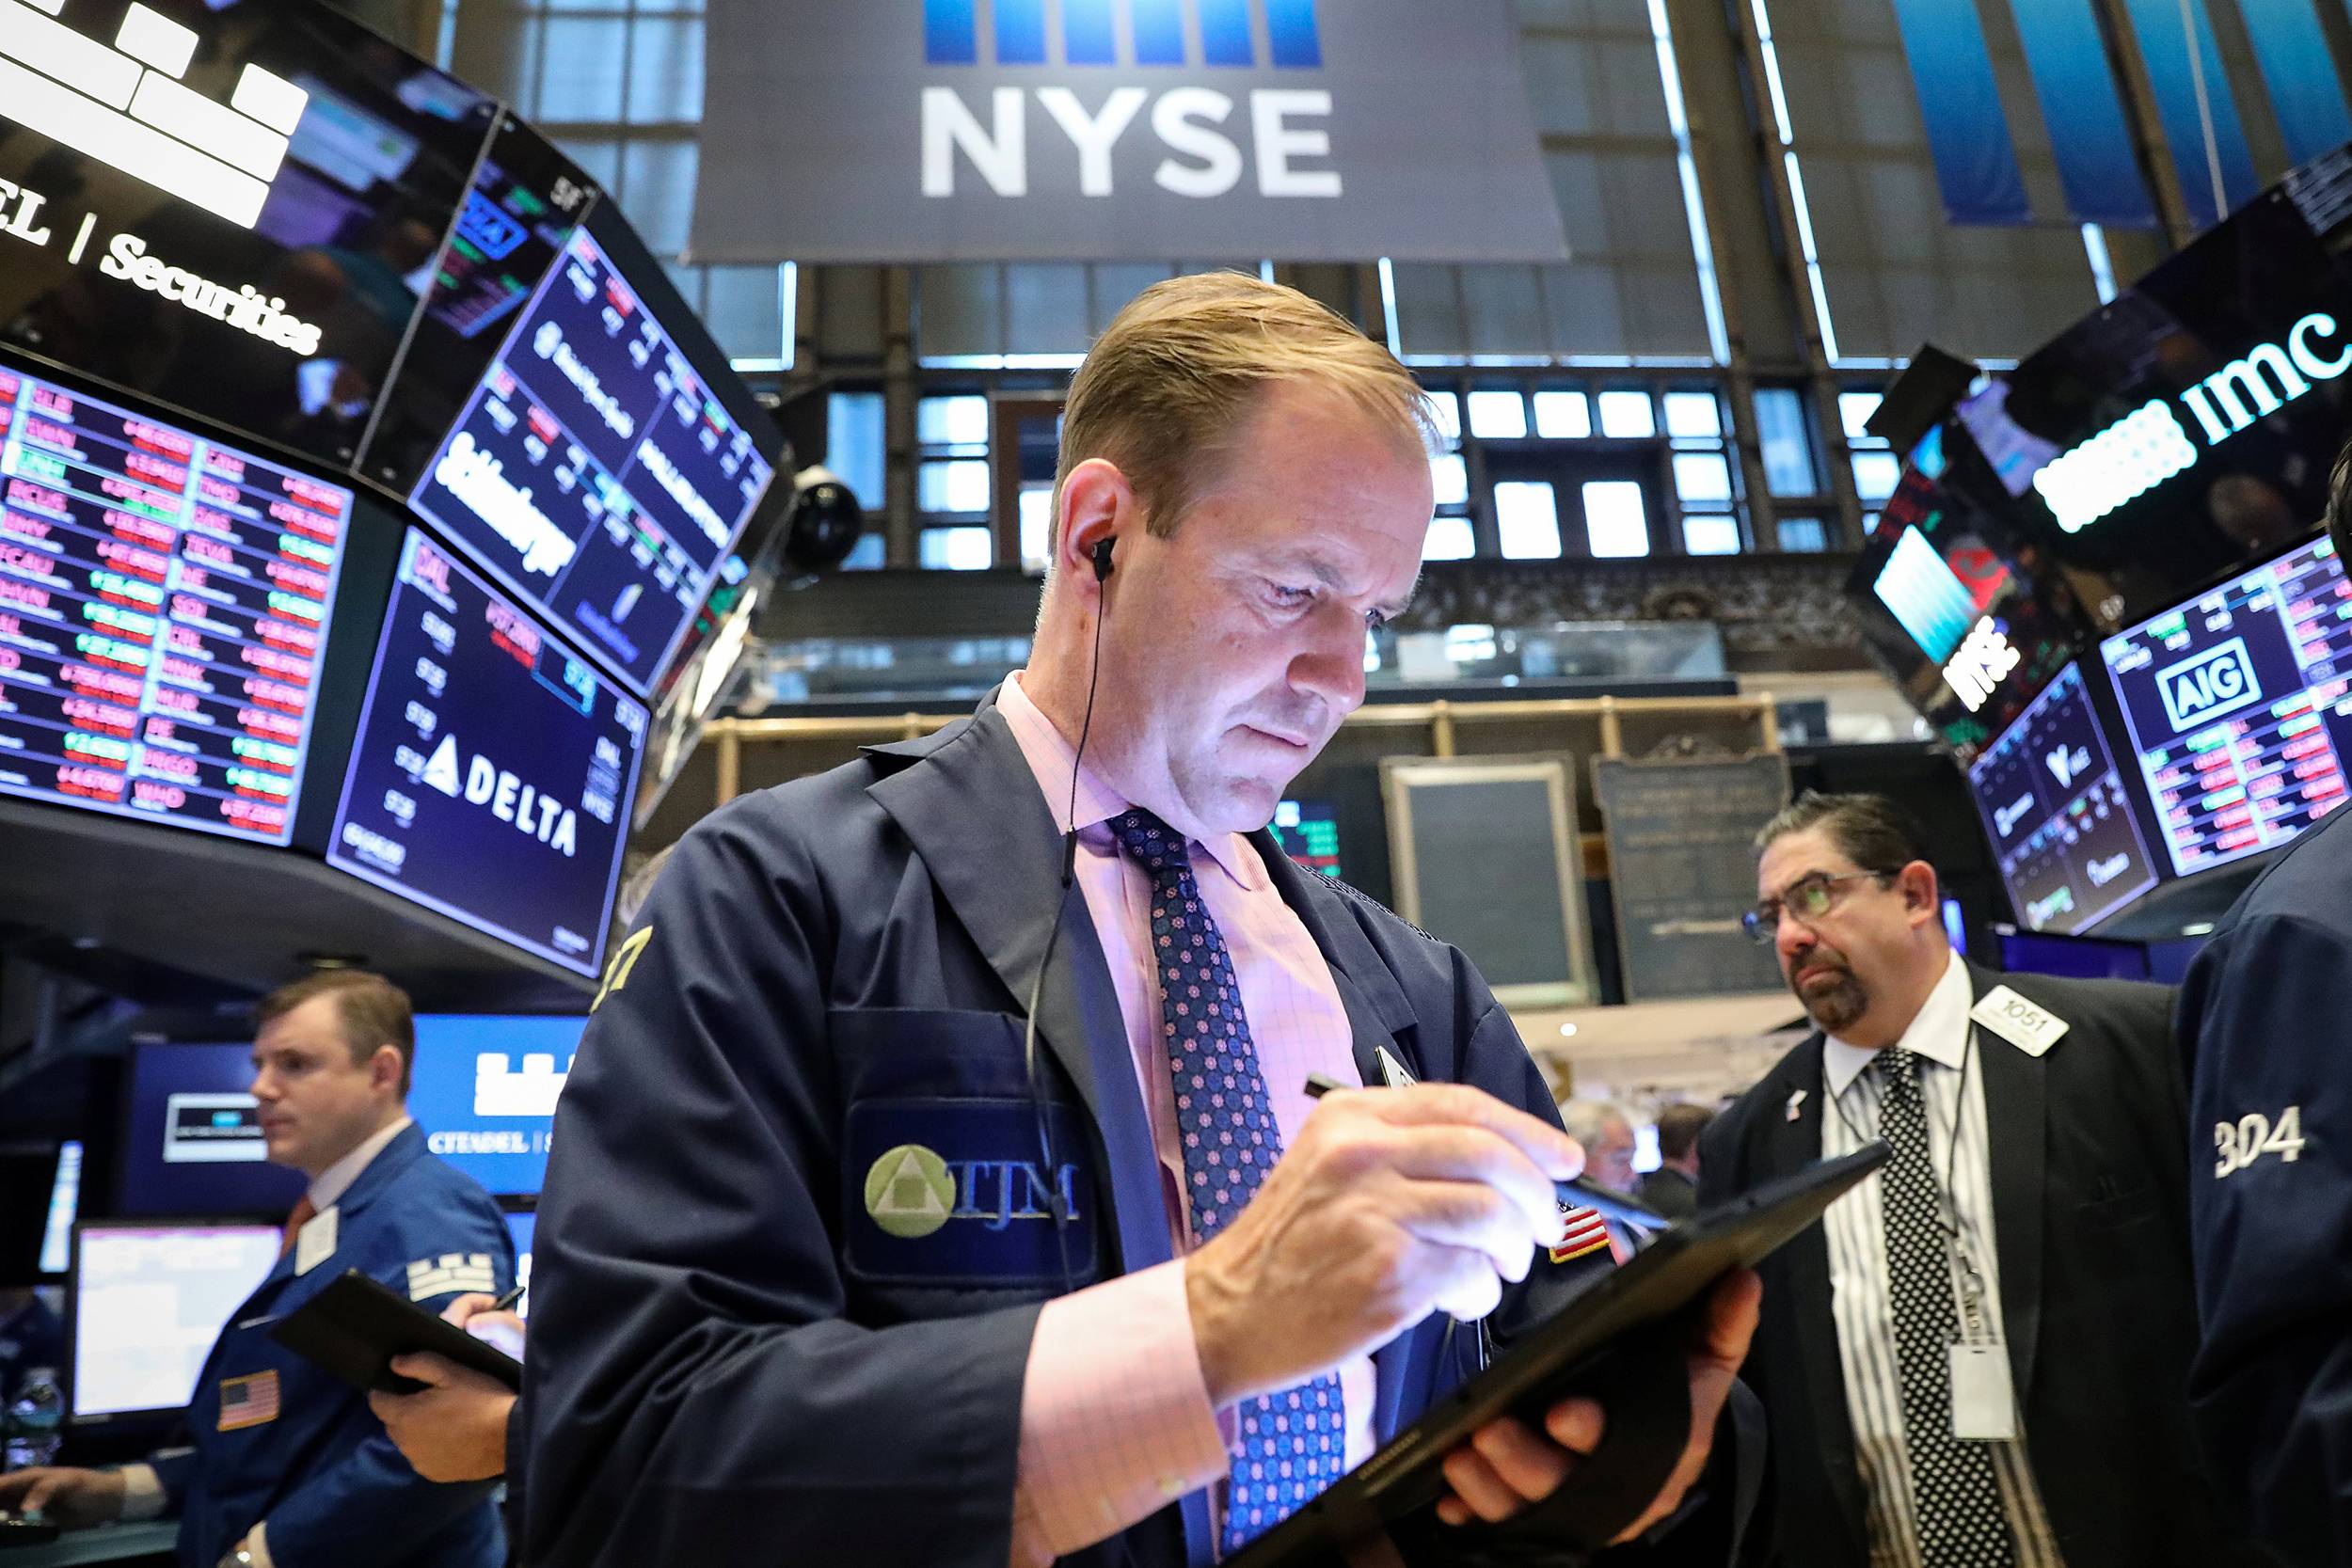 Американская фондовая биржа: список рынков сша для торговли акциями онлайн, как туда попасть